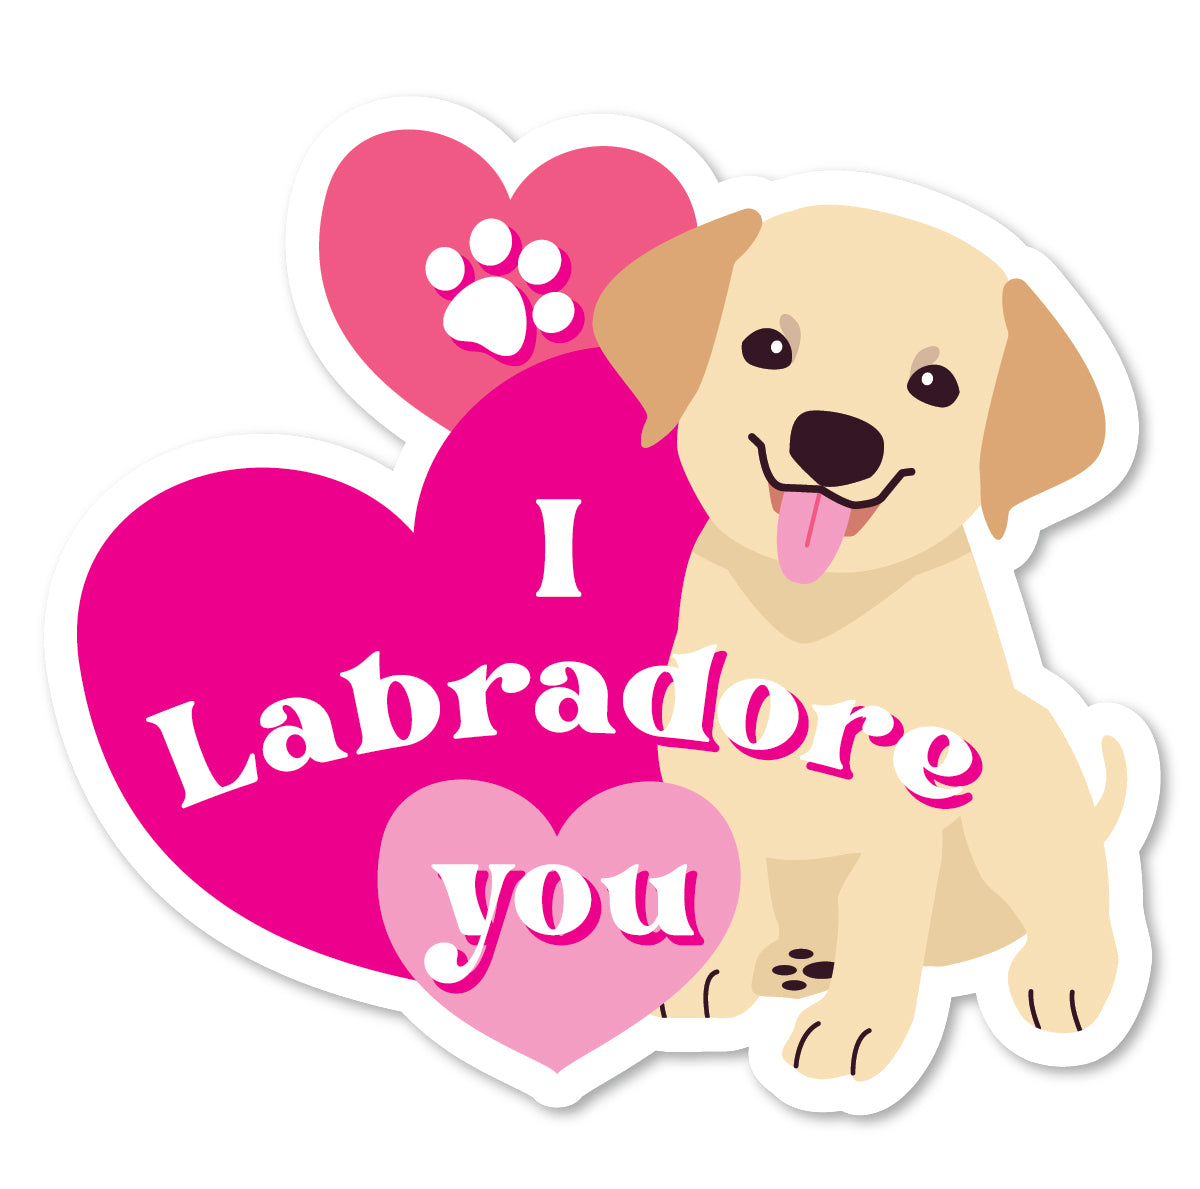 SP-082 | I Labradore You